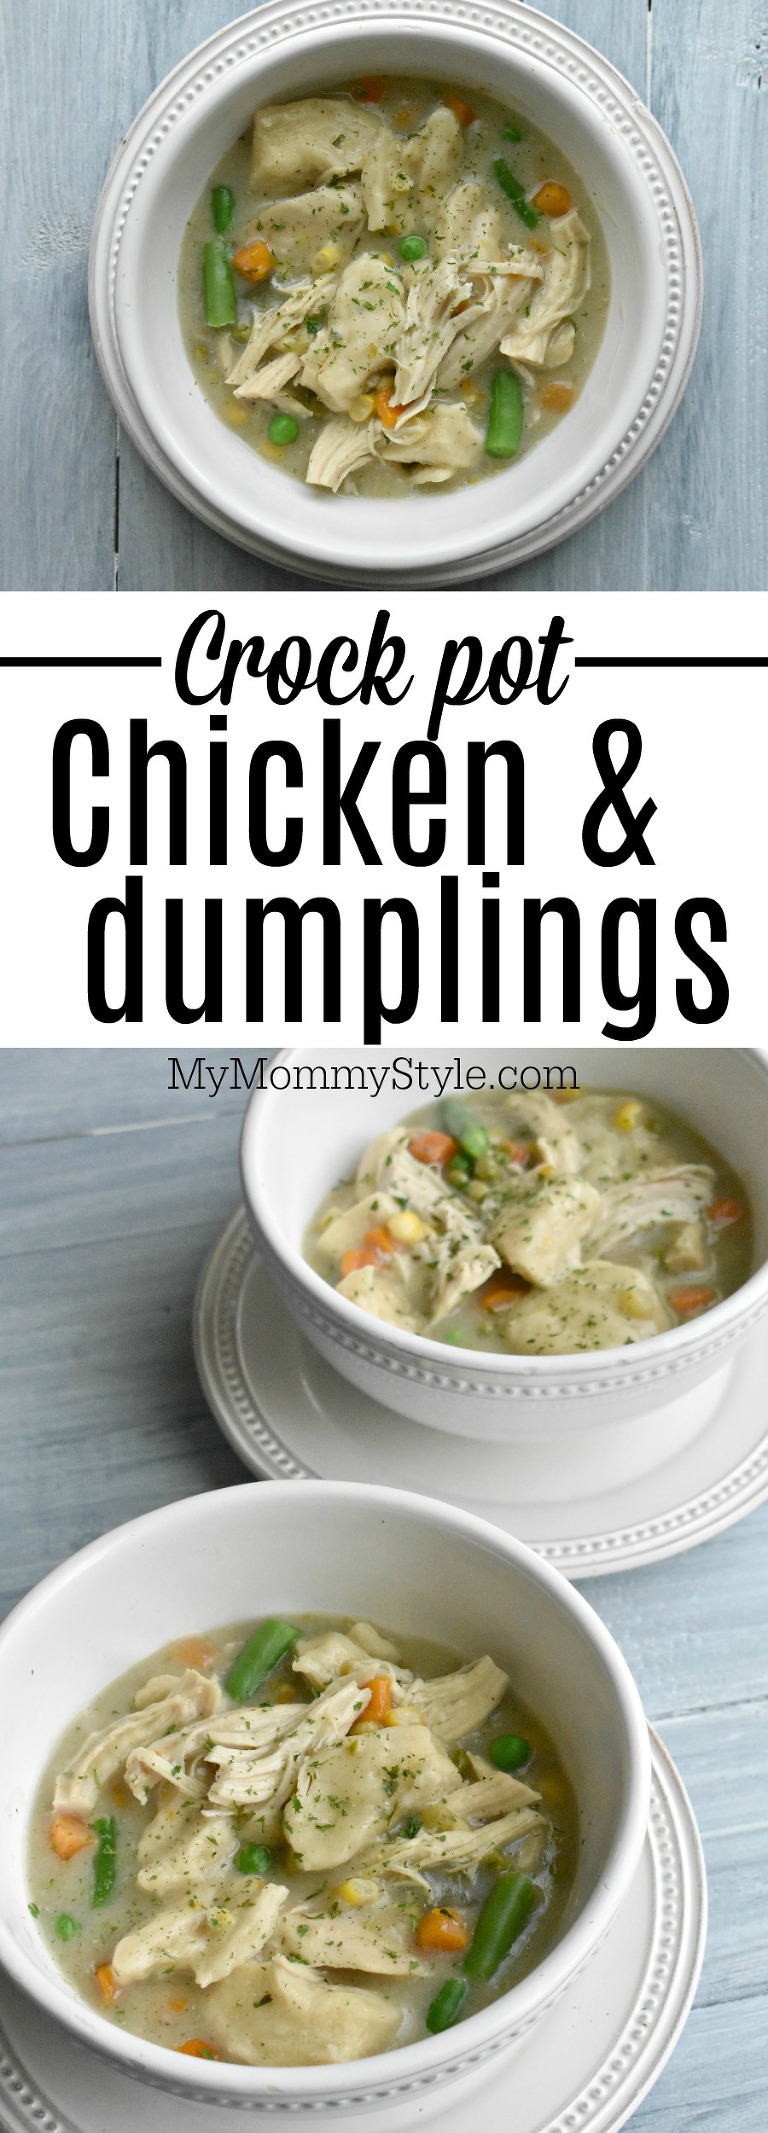 crockpot chicken and dumplings